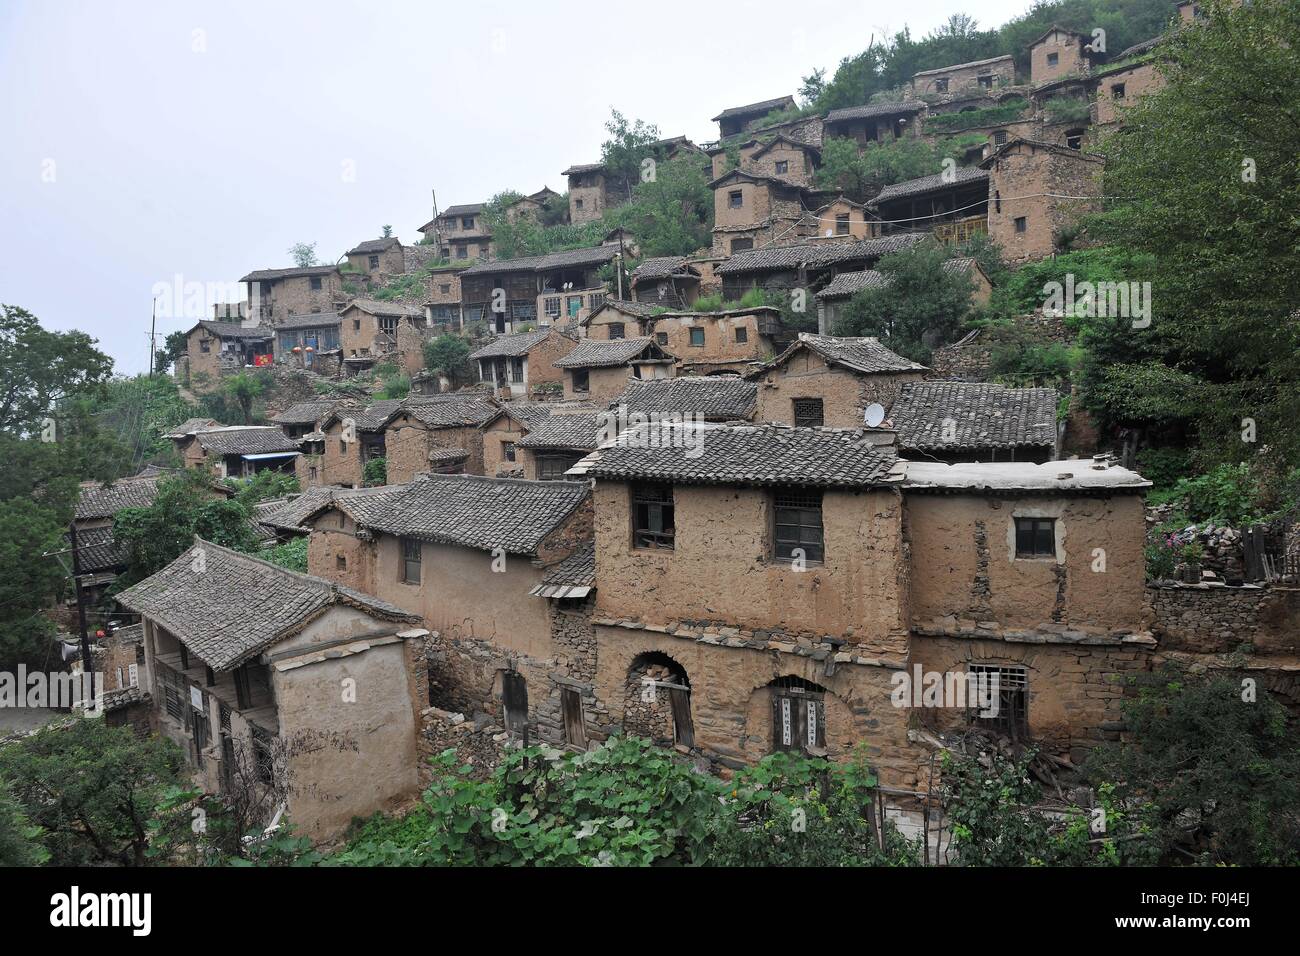 (150817) - TAIYUAN, 17. August 2015 (Xinhua)--Foto aufgenommen am 11. August 2015 zeigt eine Ansicht der Dachang Village von Yuxian County, North China Shanxi Provinz. Das tausend Jahre alte Dorf gegen Berge lockt Touristen und Foto-Enthusiasten aus 2009. Laut der Statistik des Ministeriums für Wohnungswesen und Urban-Rural Development sank die Zahl der nicht rechtsfähige Dörfer in China von 4,2 Millionen im Jahr 1984 auf 2,67 Millionen im Jahr 2012 mit einer Rate von 55, 000 pro Jahr. Schutz von traditionellen Dörfern ist erforderlich und laufende Erschließung kulturelle Ressourcen und Entwicklung des Tourismus. (Xinhua/Zh Stockfoto